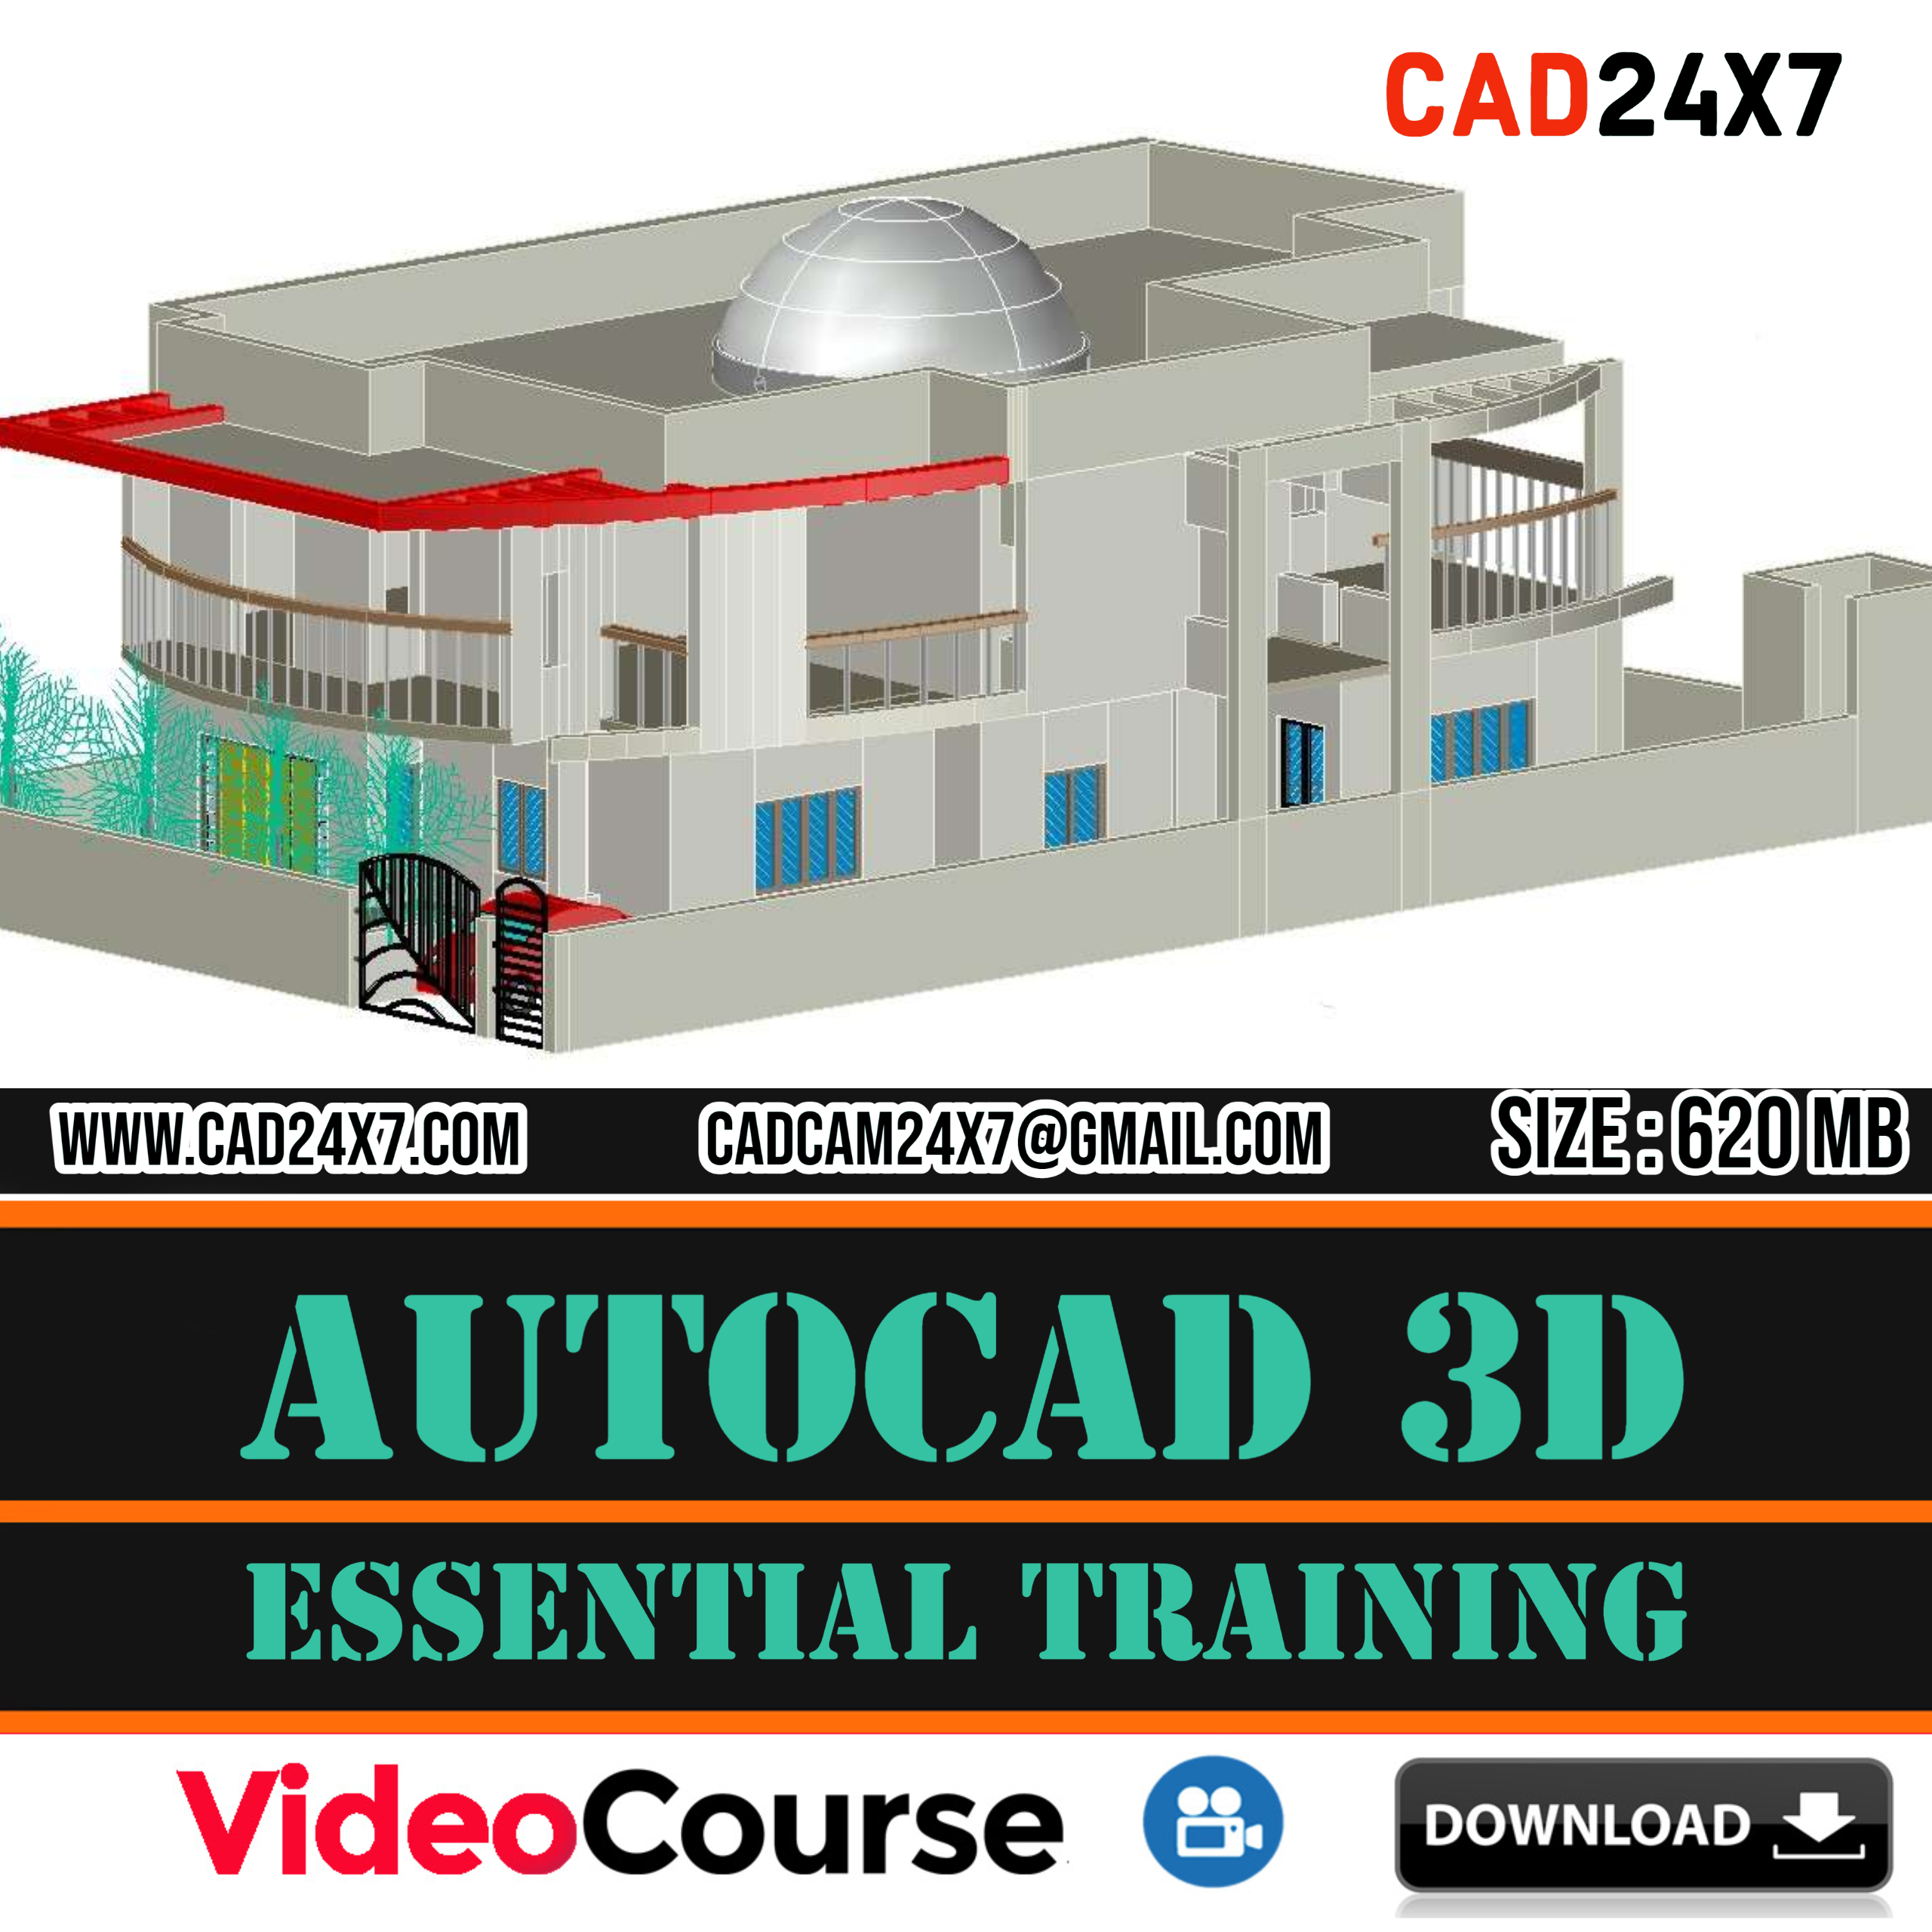 AutoCAD 3D Essential Training